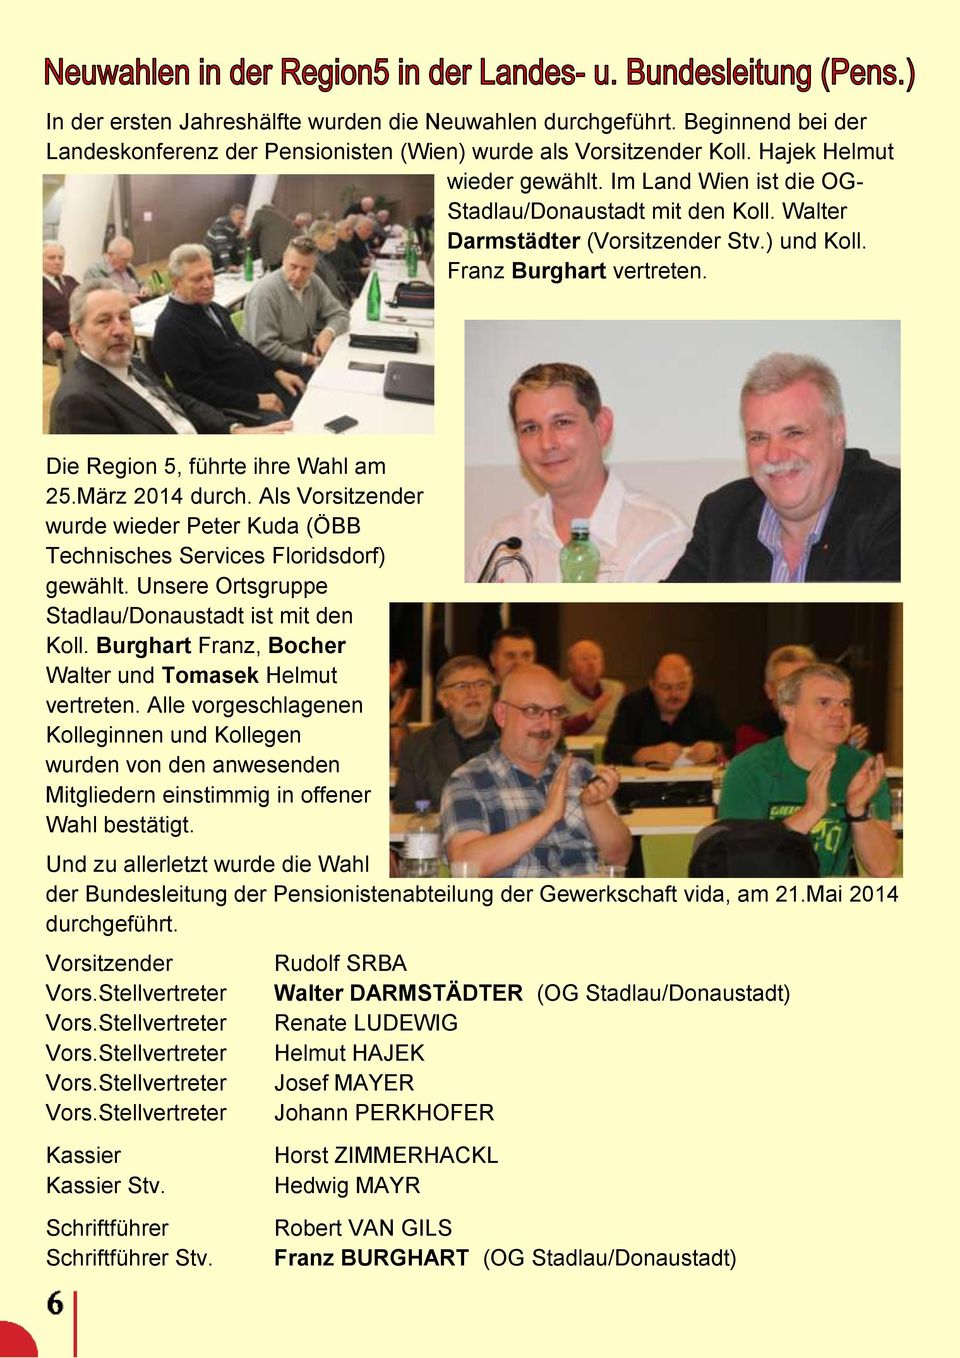 Als Vorsitzender wurde wieder Peter Kuda (ÖBB Technisches Services Floridsdorf) gewählt. Unsere Ortsgruppe Stadlau/Donaustadt ist mit den Koll.